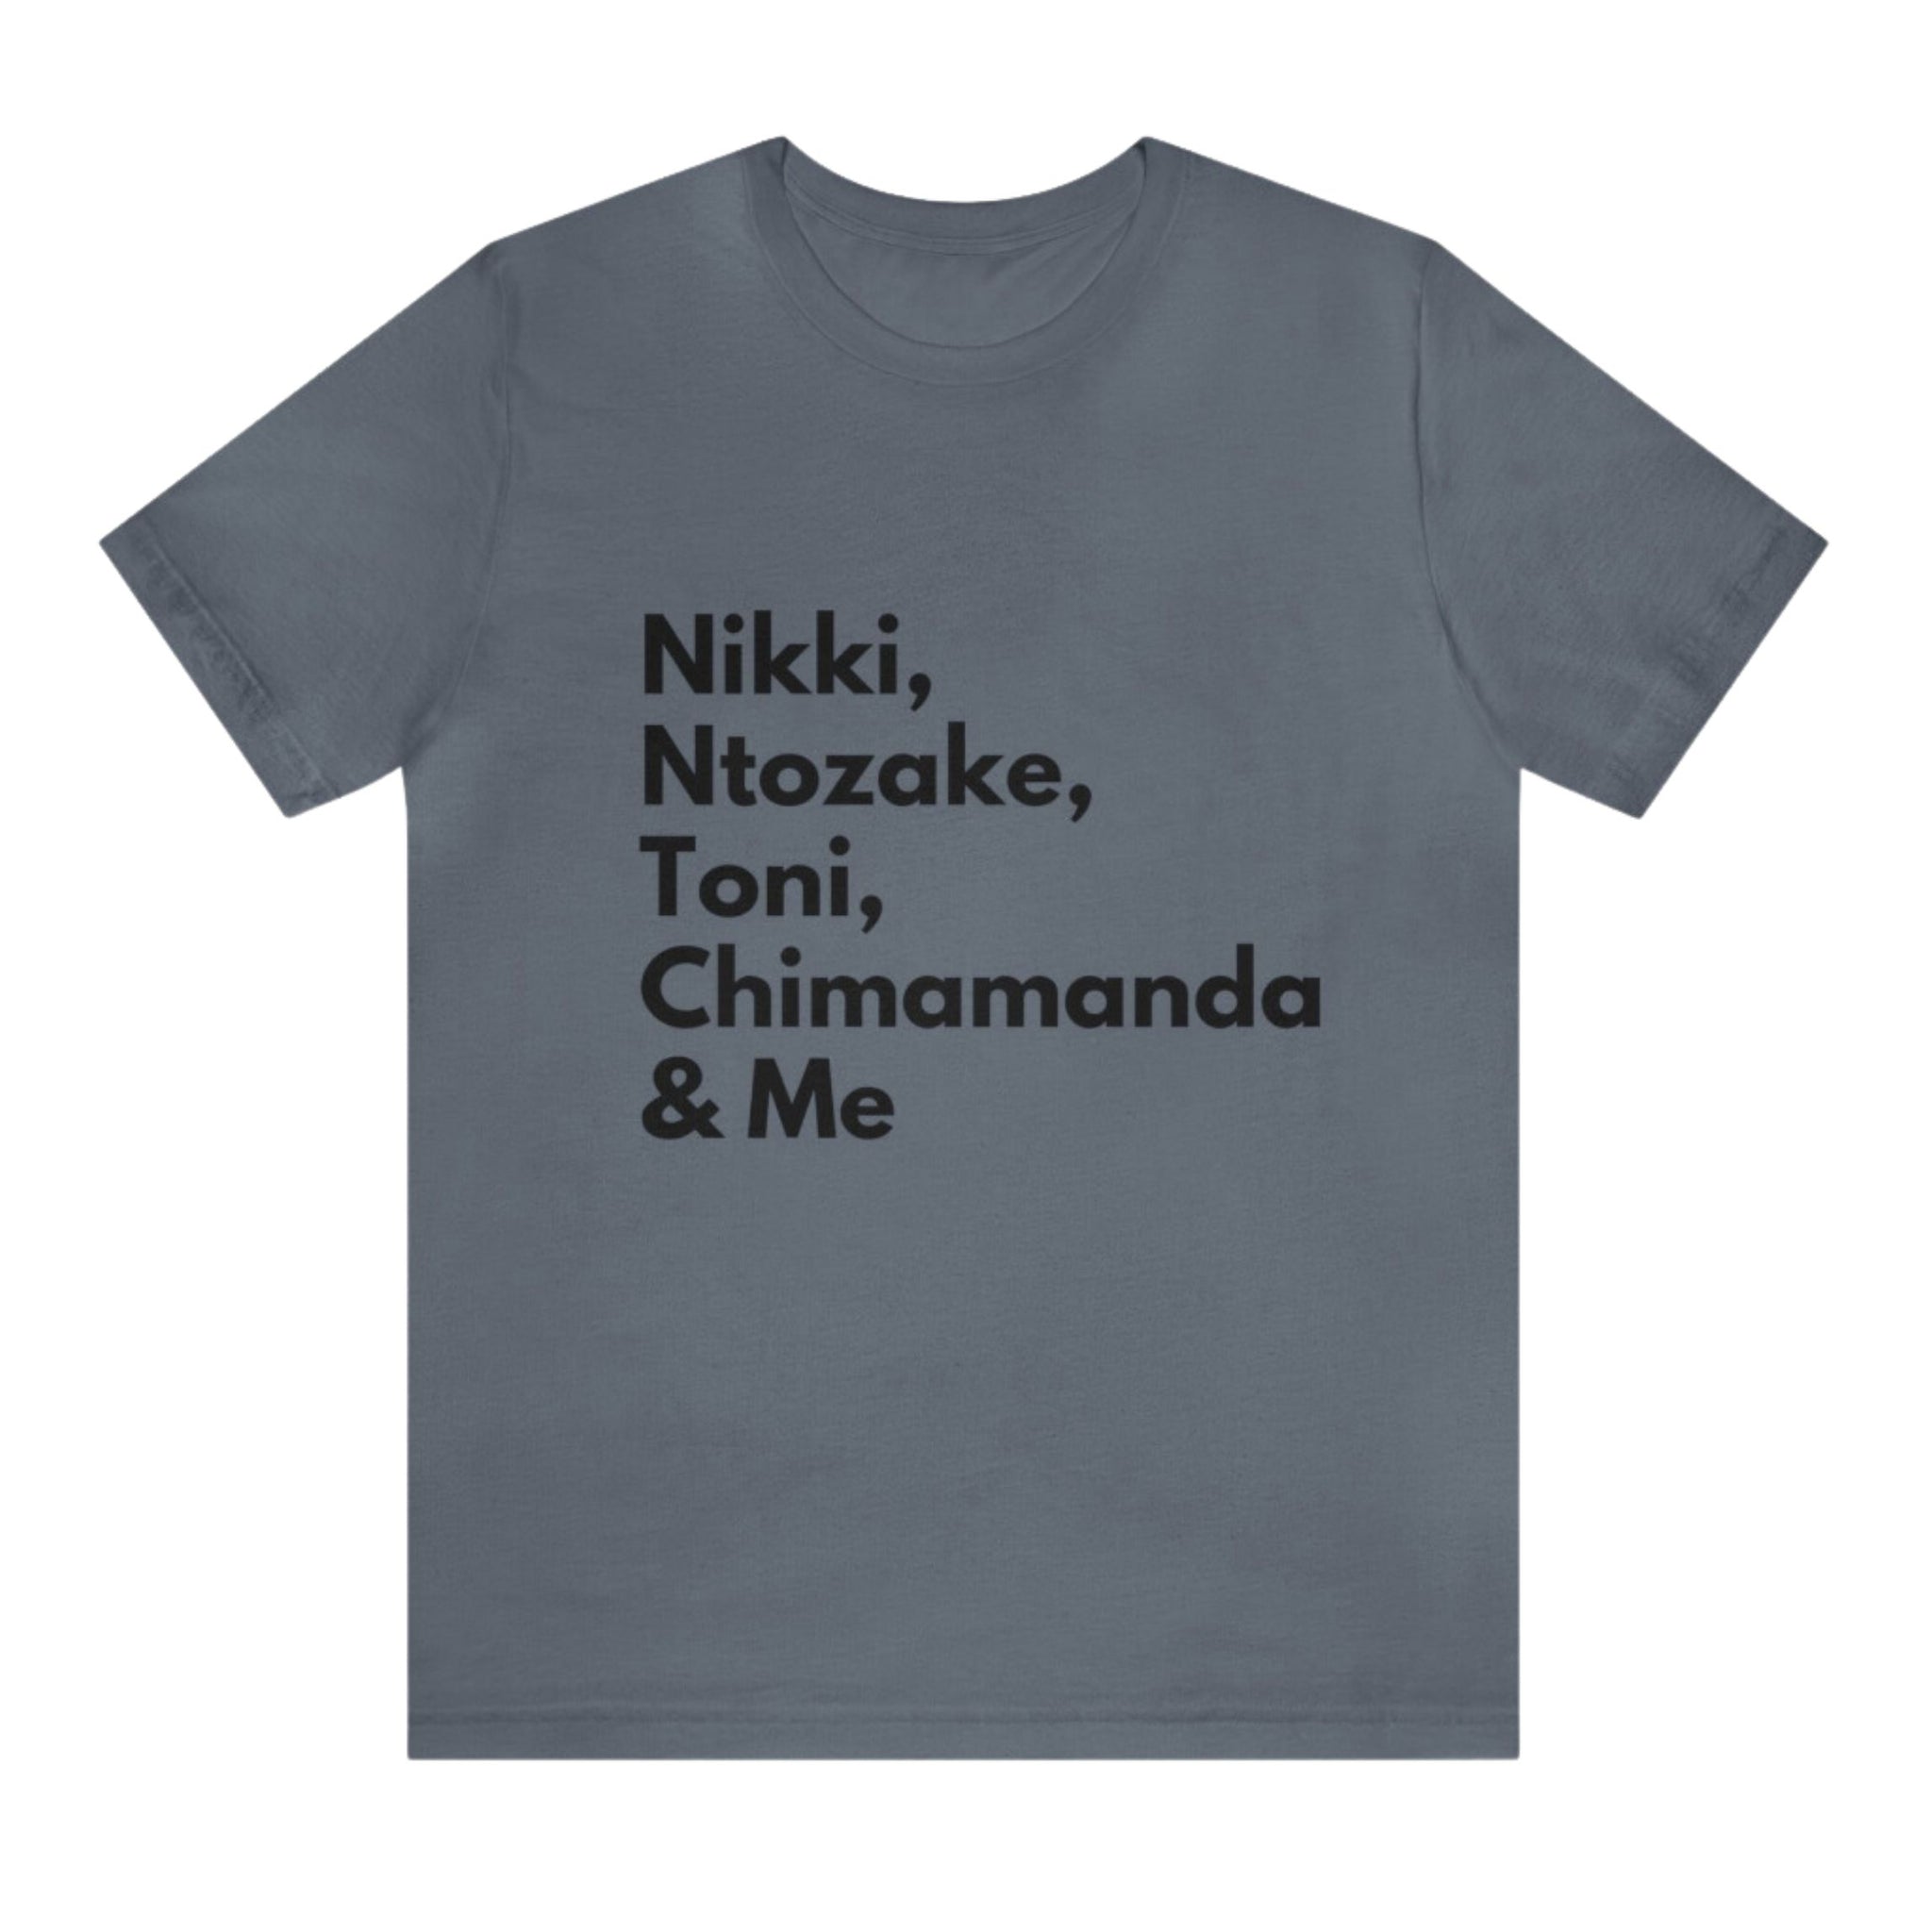 Nikki, Ntozake, Toni, Chimamanda & Me Tee